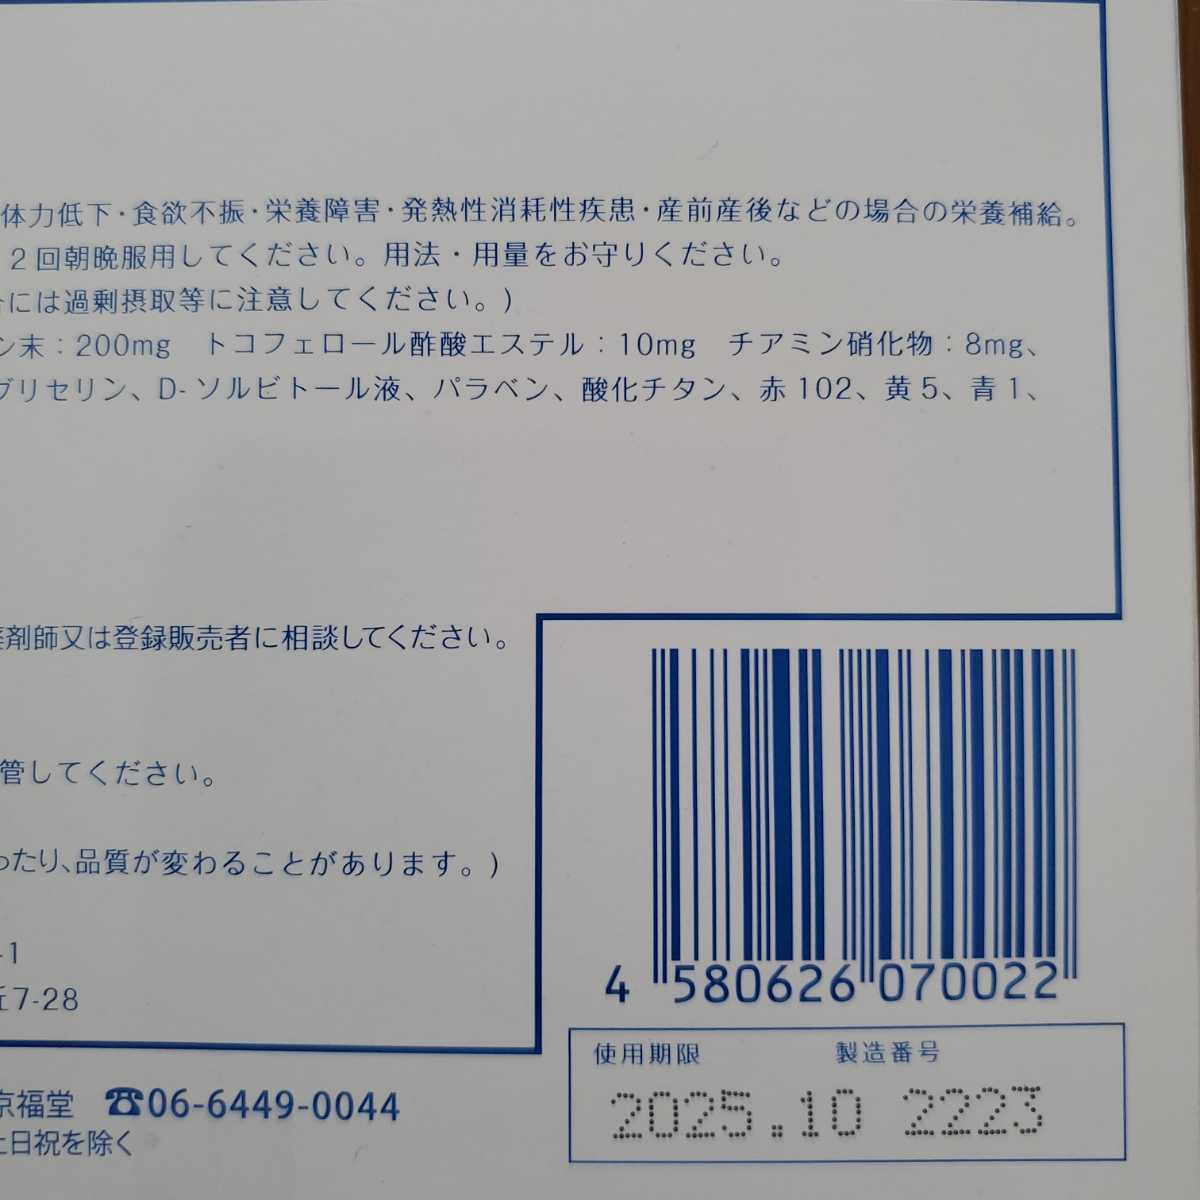 オマケ付プロキオン カプセル 3箱セット新品未使用未開封